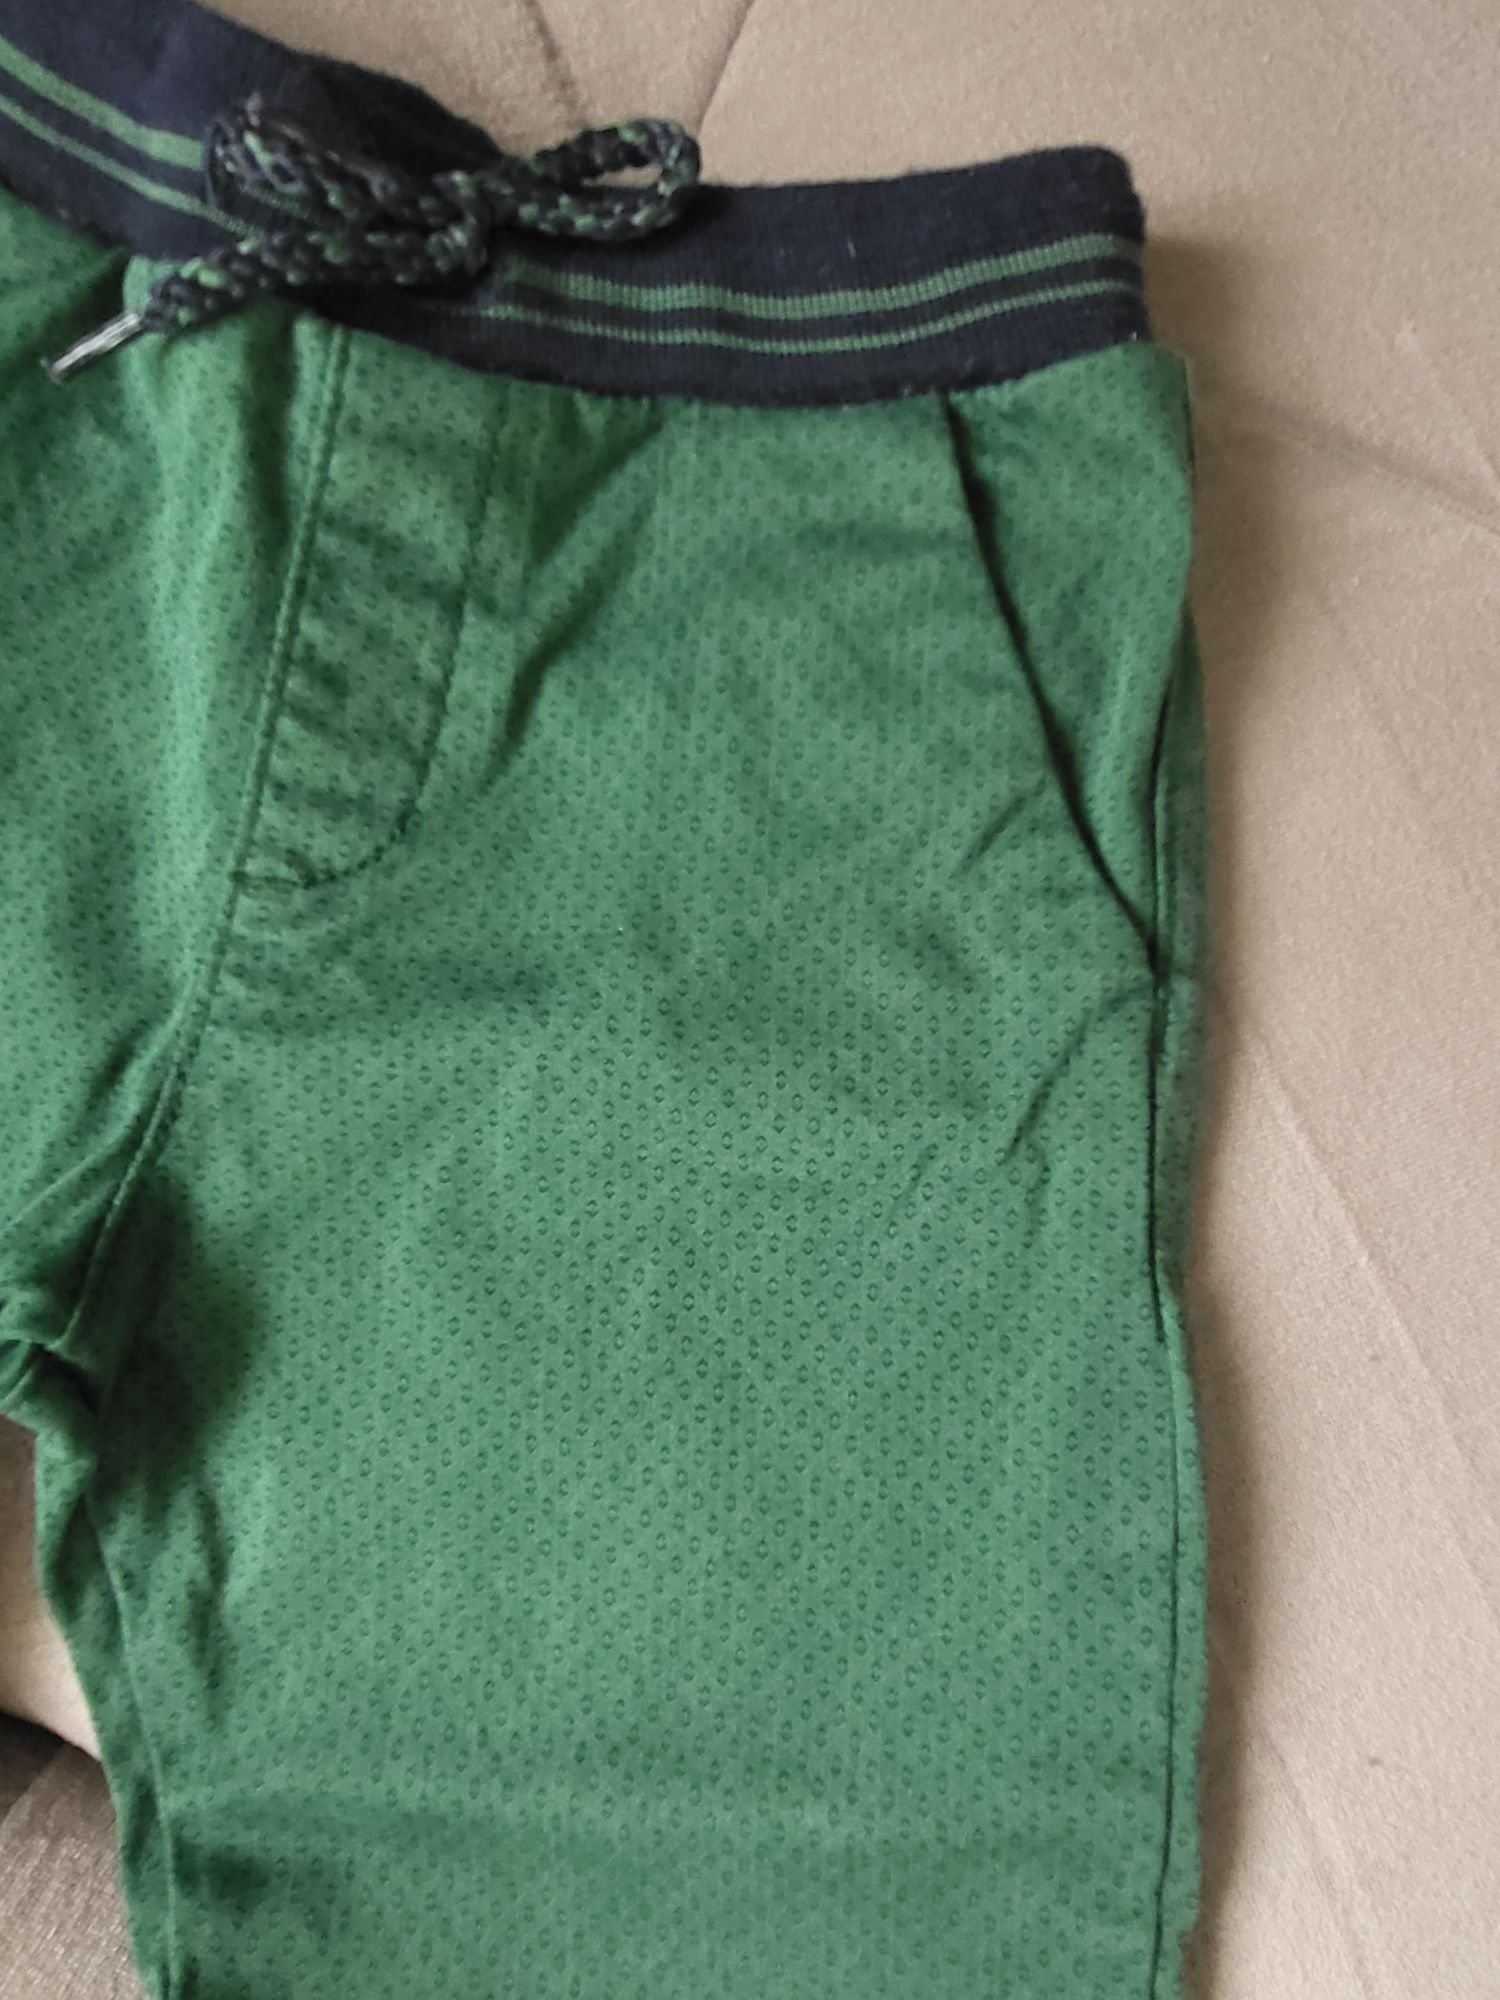 Spodnie zielone 86